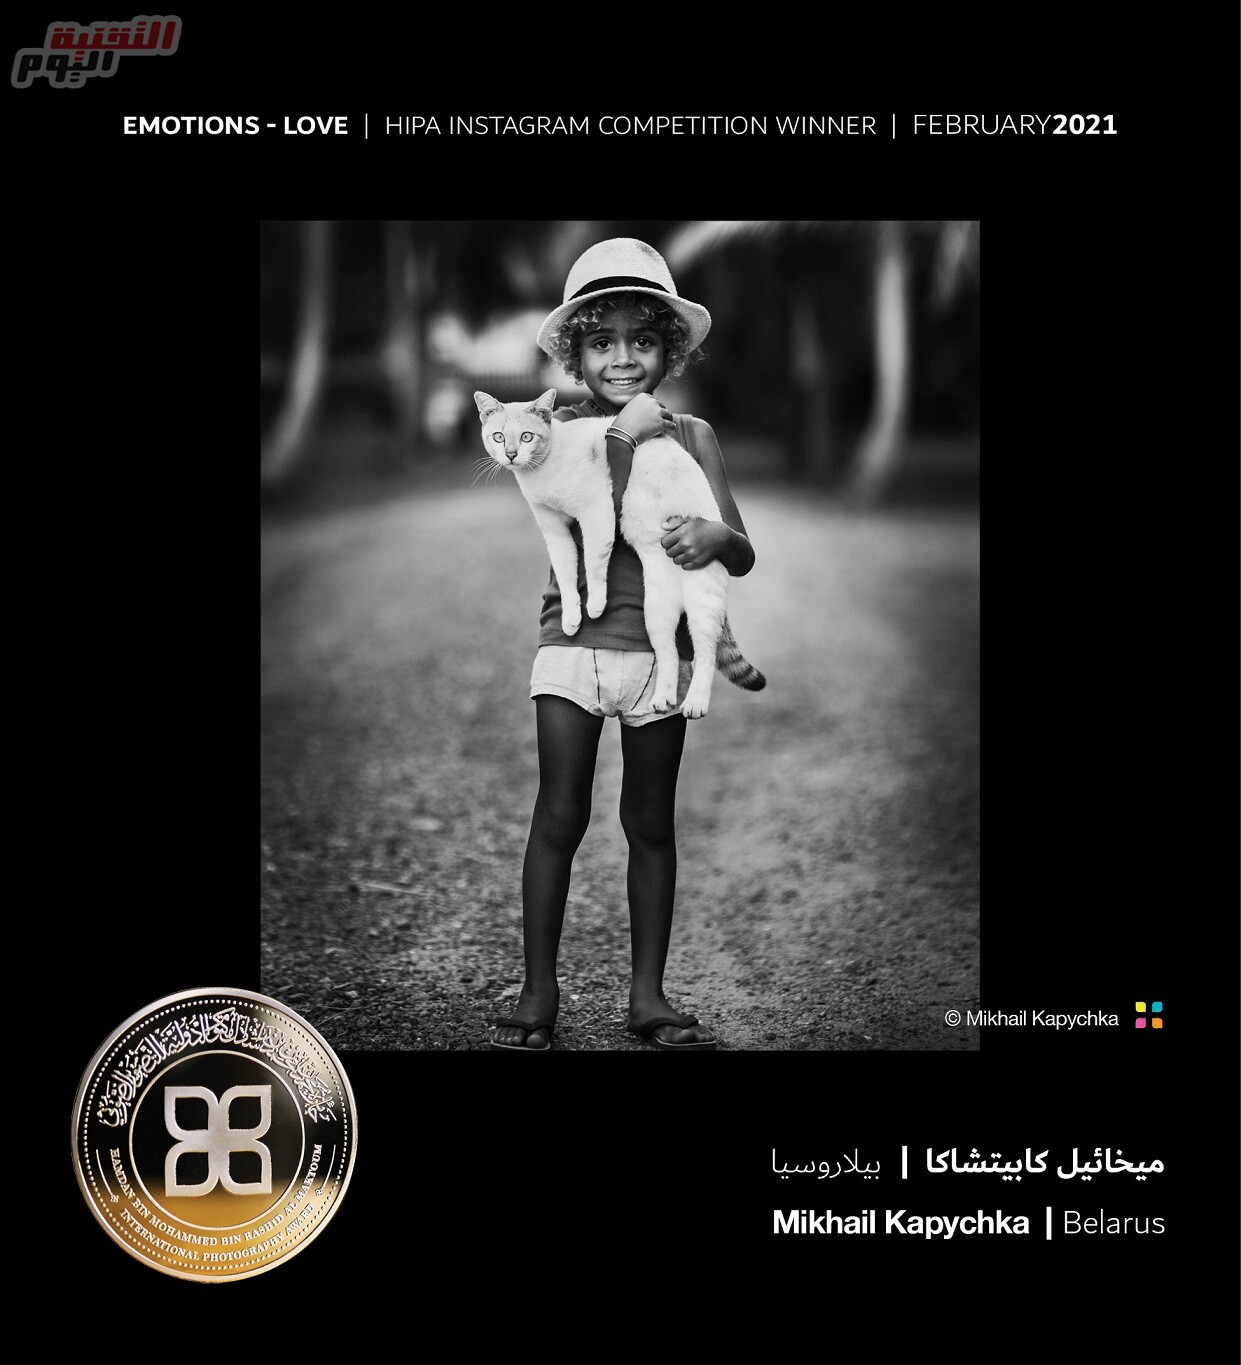 جائزة حمدان بن محمد للتصوير تنشر الصور الفائزة بمسابقة “المشاعر – الحب” –  التقنية اليوم